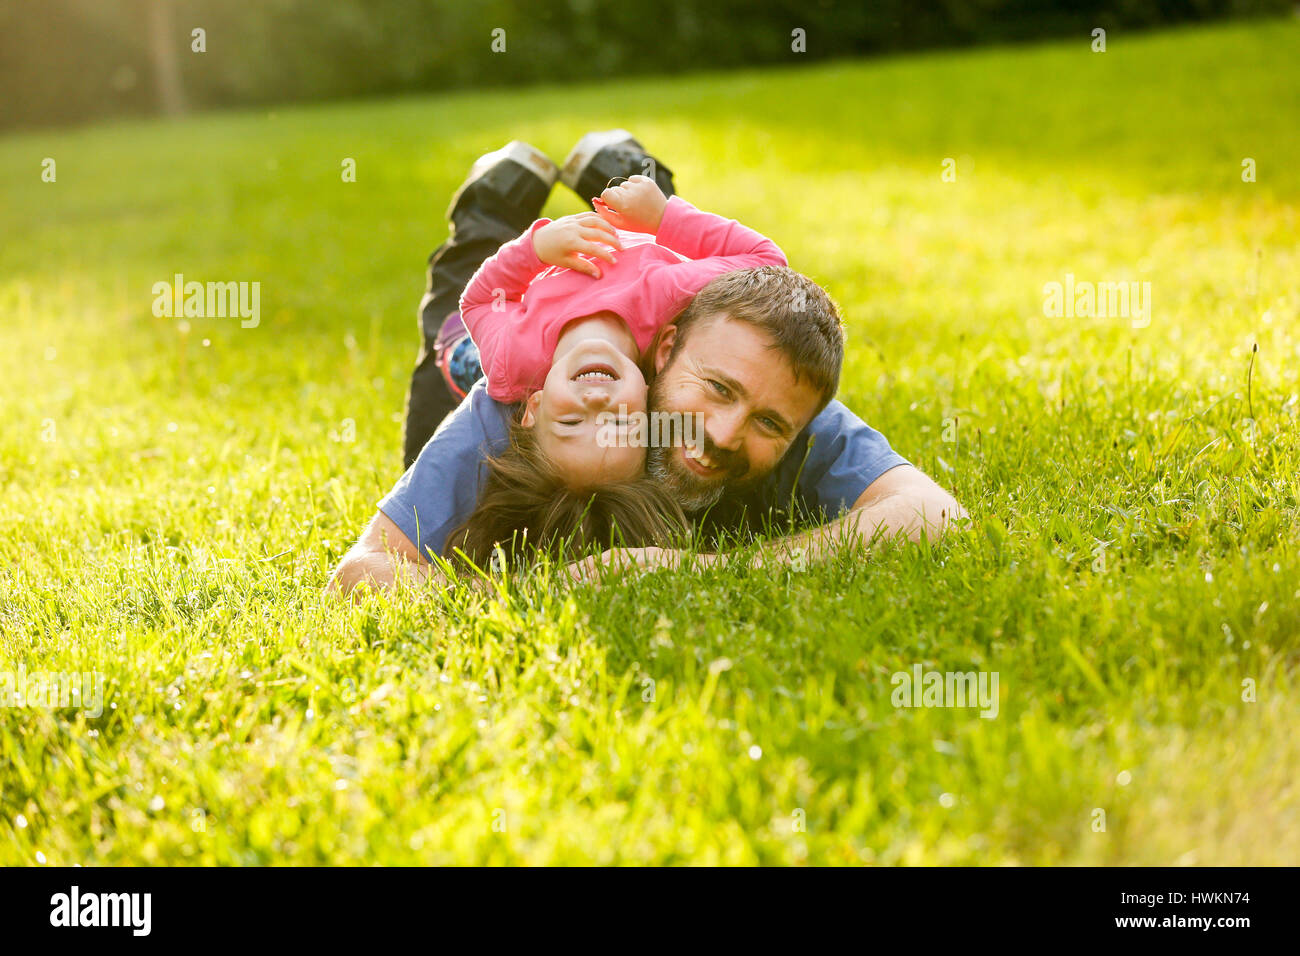 Vater und Tochter liegen auf dem Rasen, genießen jede andere Firma, bonding, spielen, Spaß in der Natur an einem hellen, sonnigen Tag gewidmet. Elternschaft, l Stockfoto